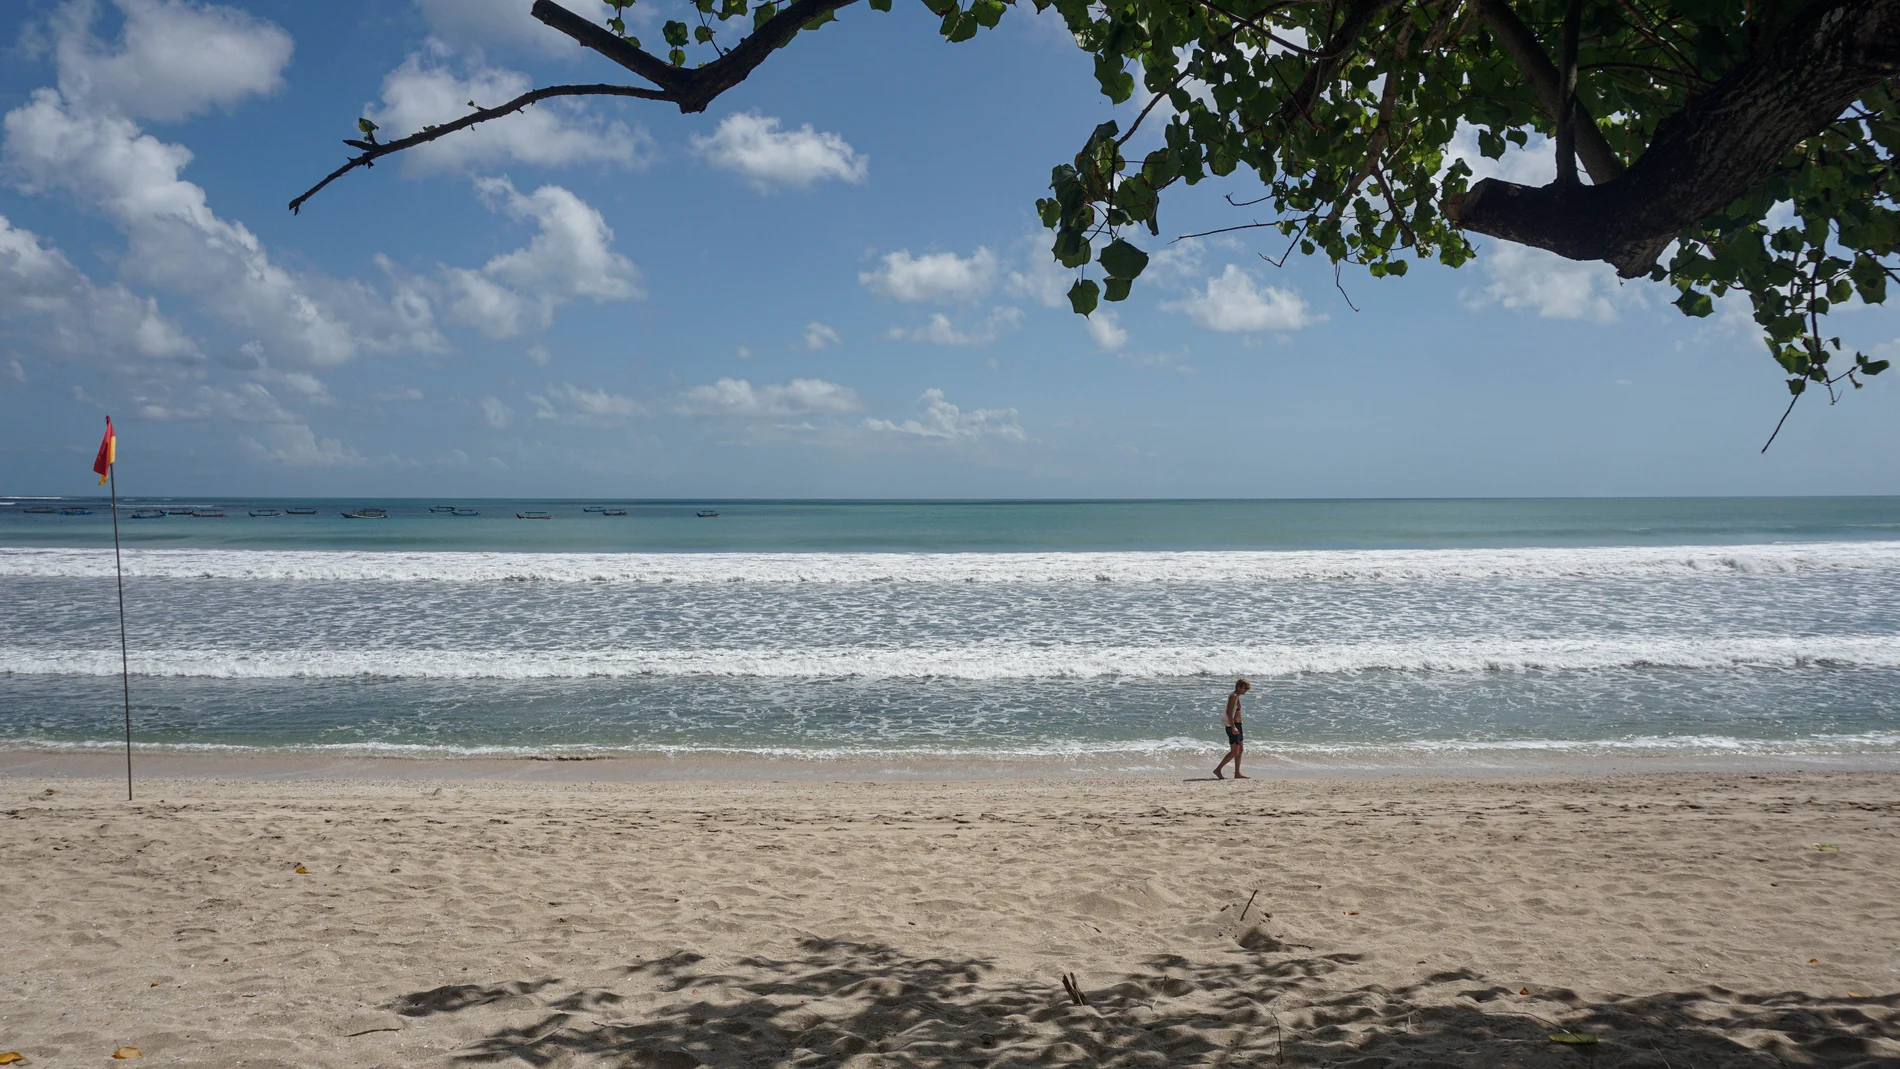 Indonesia.- Muere ahogado un turista español en una playa de Bali, Indonesia